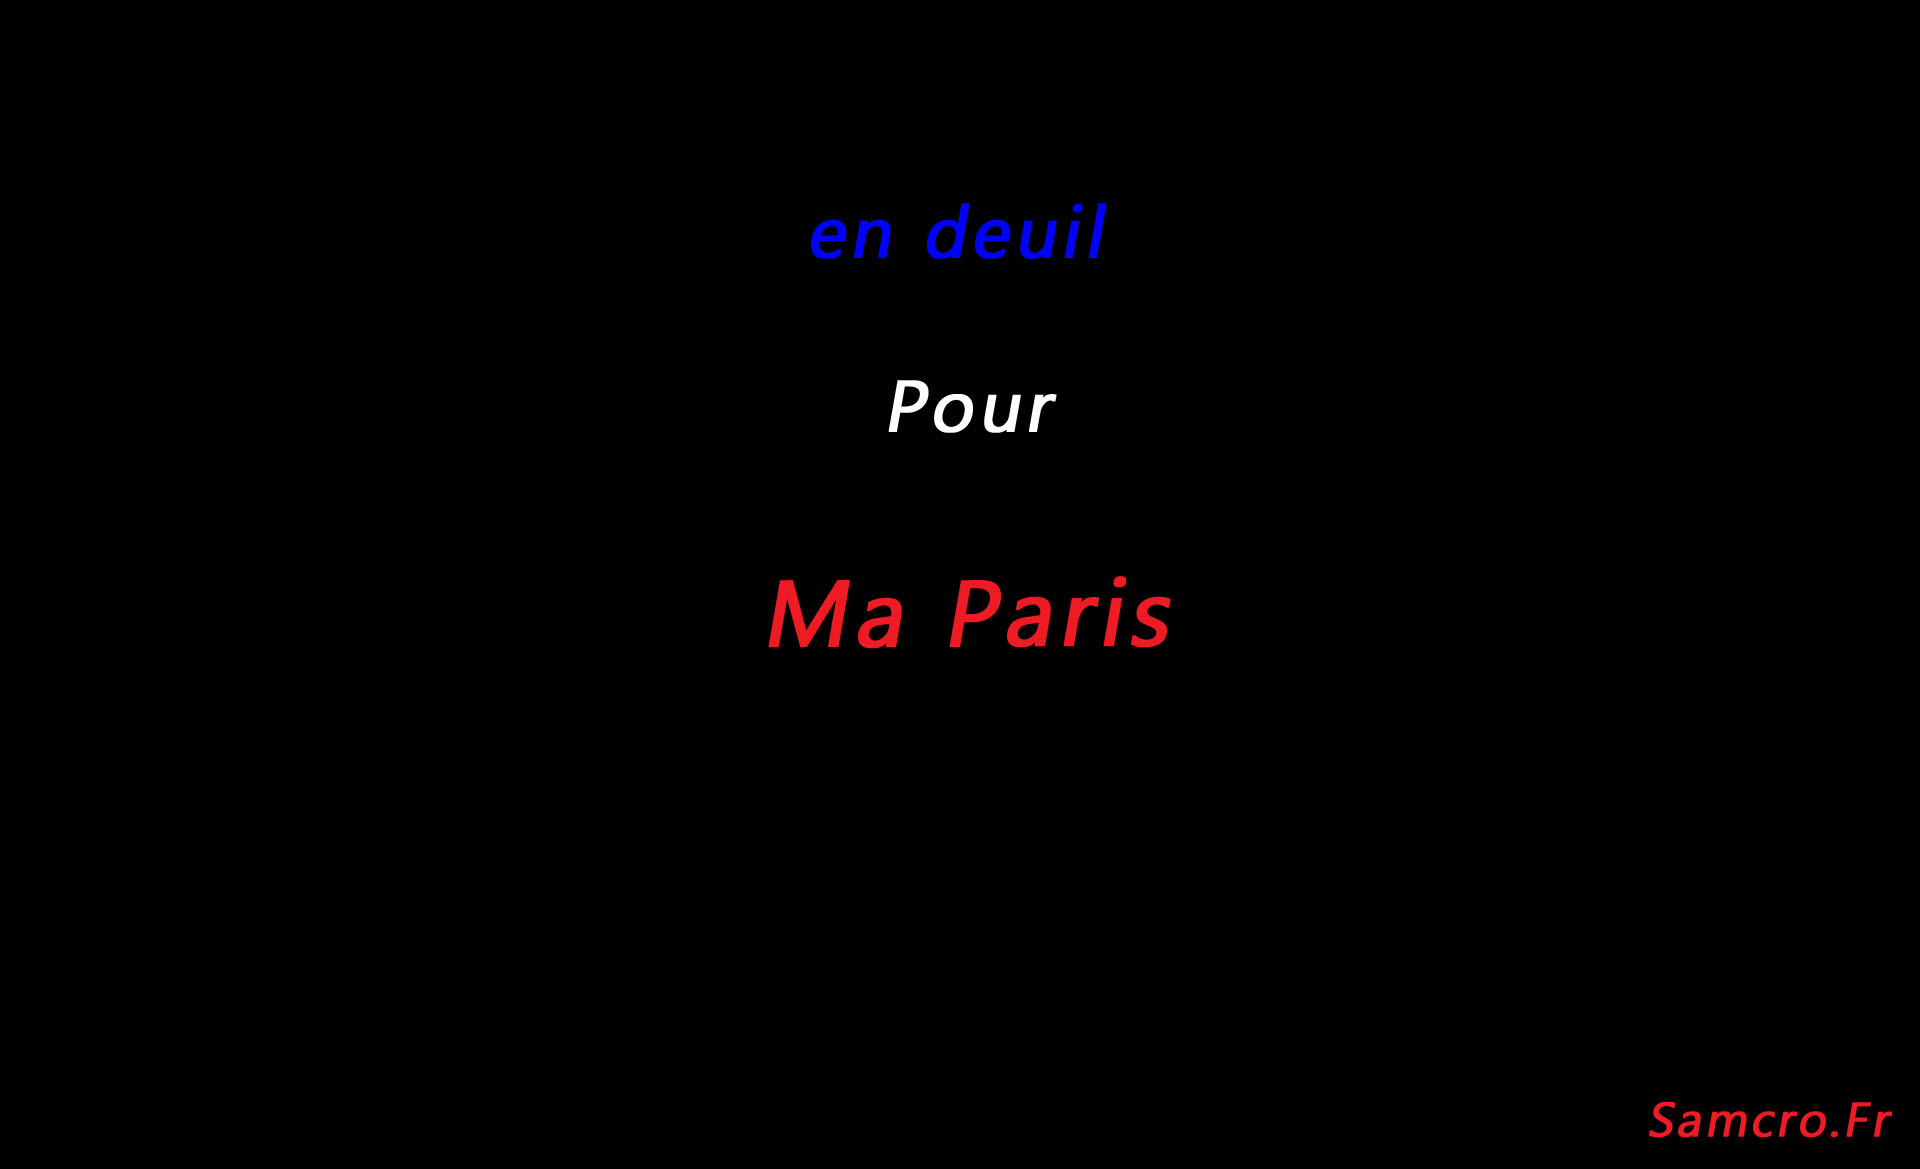 vive la france vive la république – en deuil Pour Ma Paris